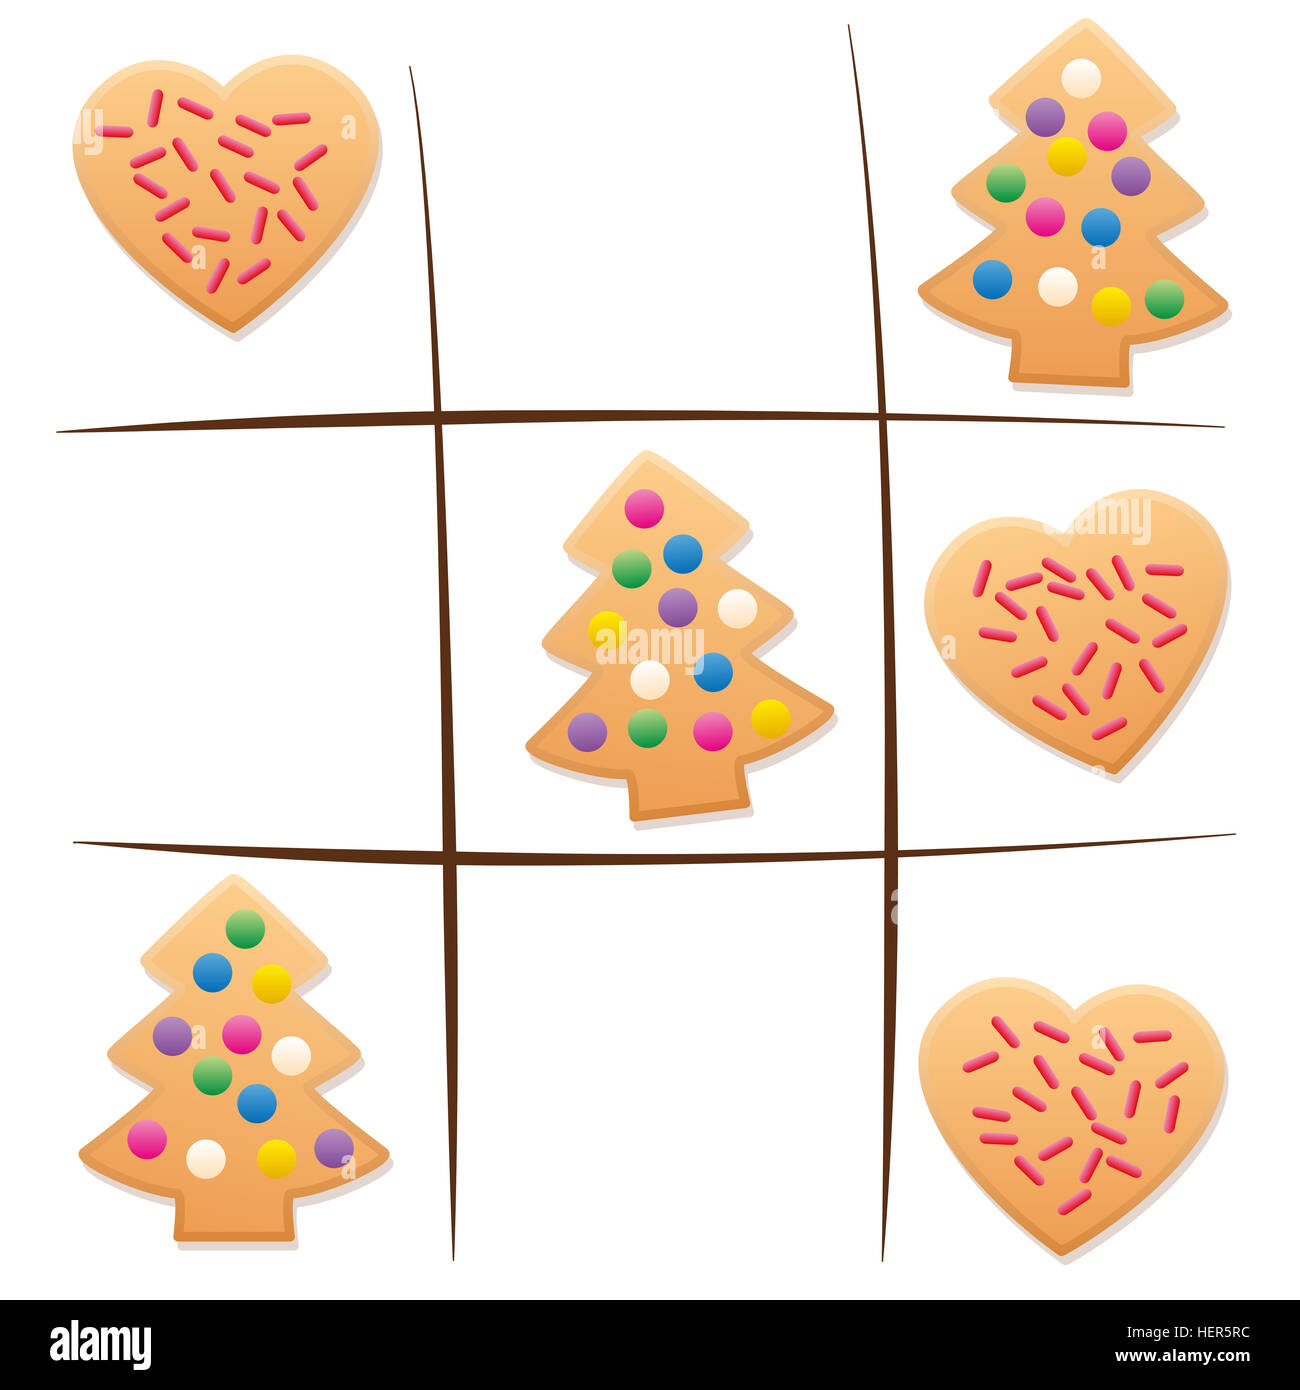 Les restes de cookies - jouer au Tic Tac Toe après Noël. Banque D'Images